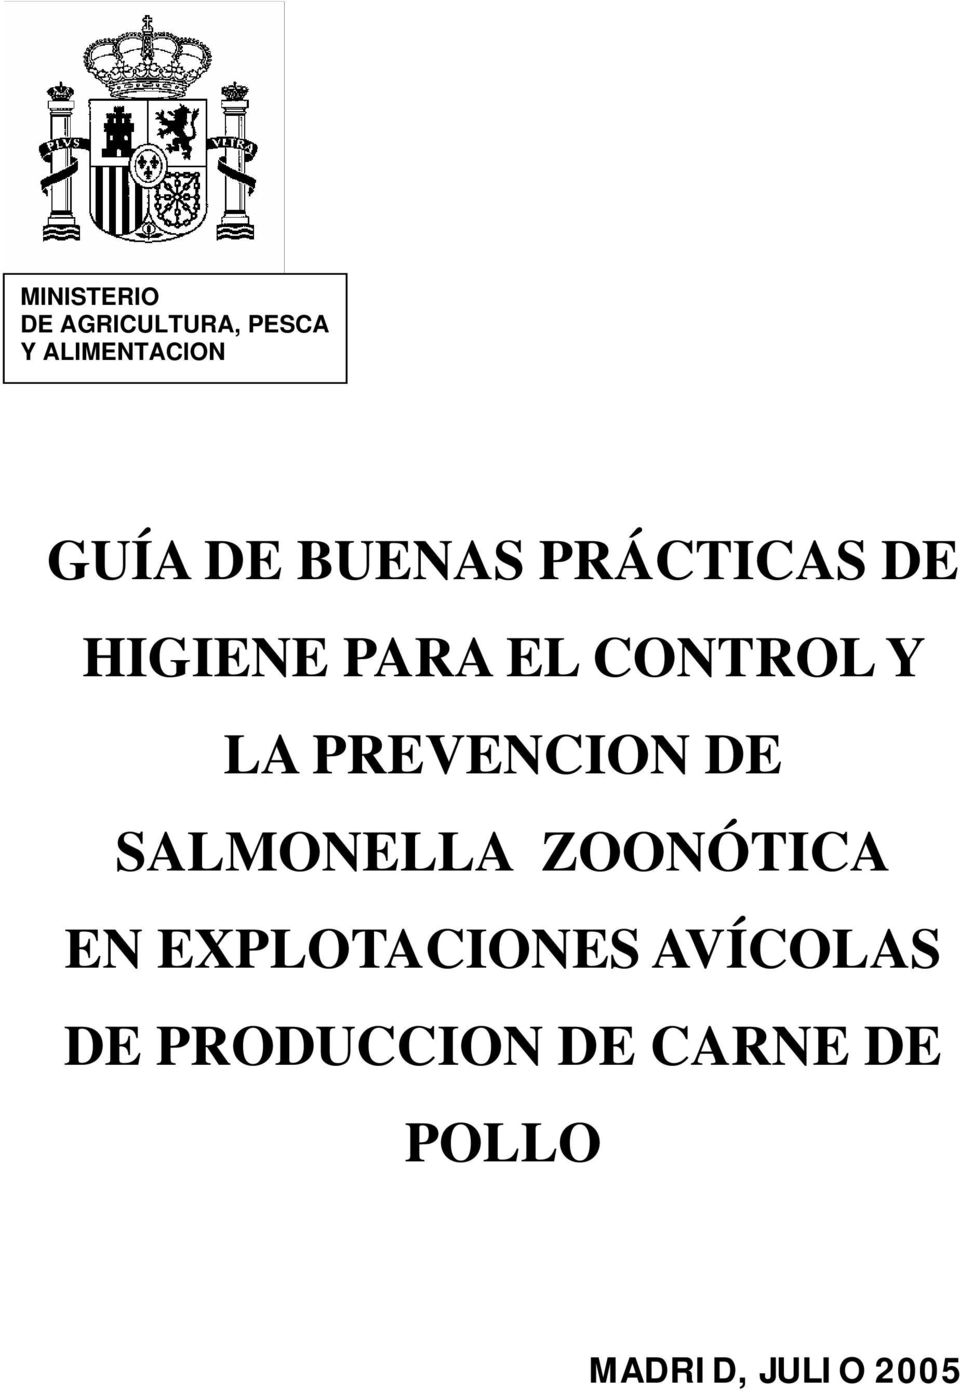 PREVENCION DE SALMONELLA ZOONÓTICA EN EXPLOTACIONES